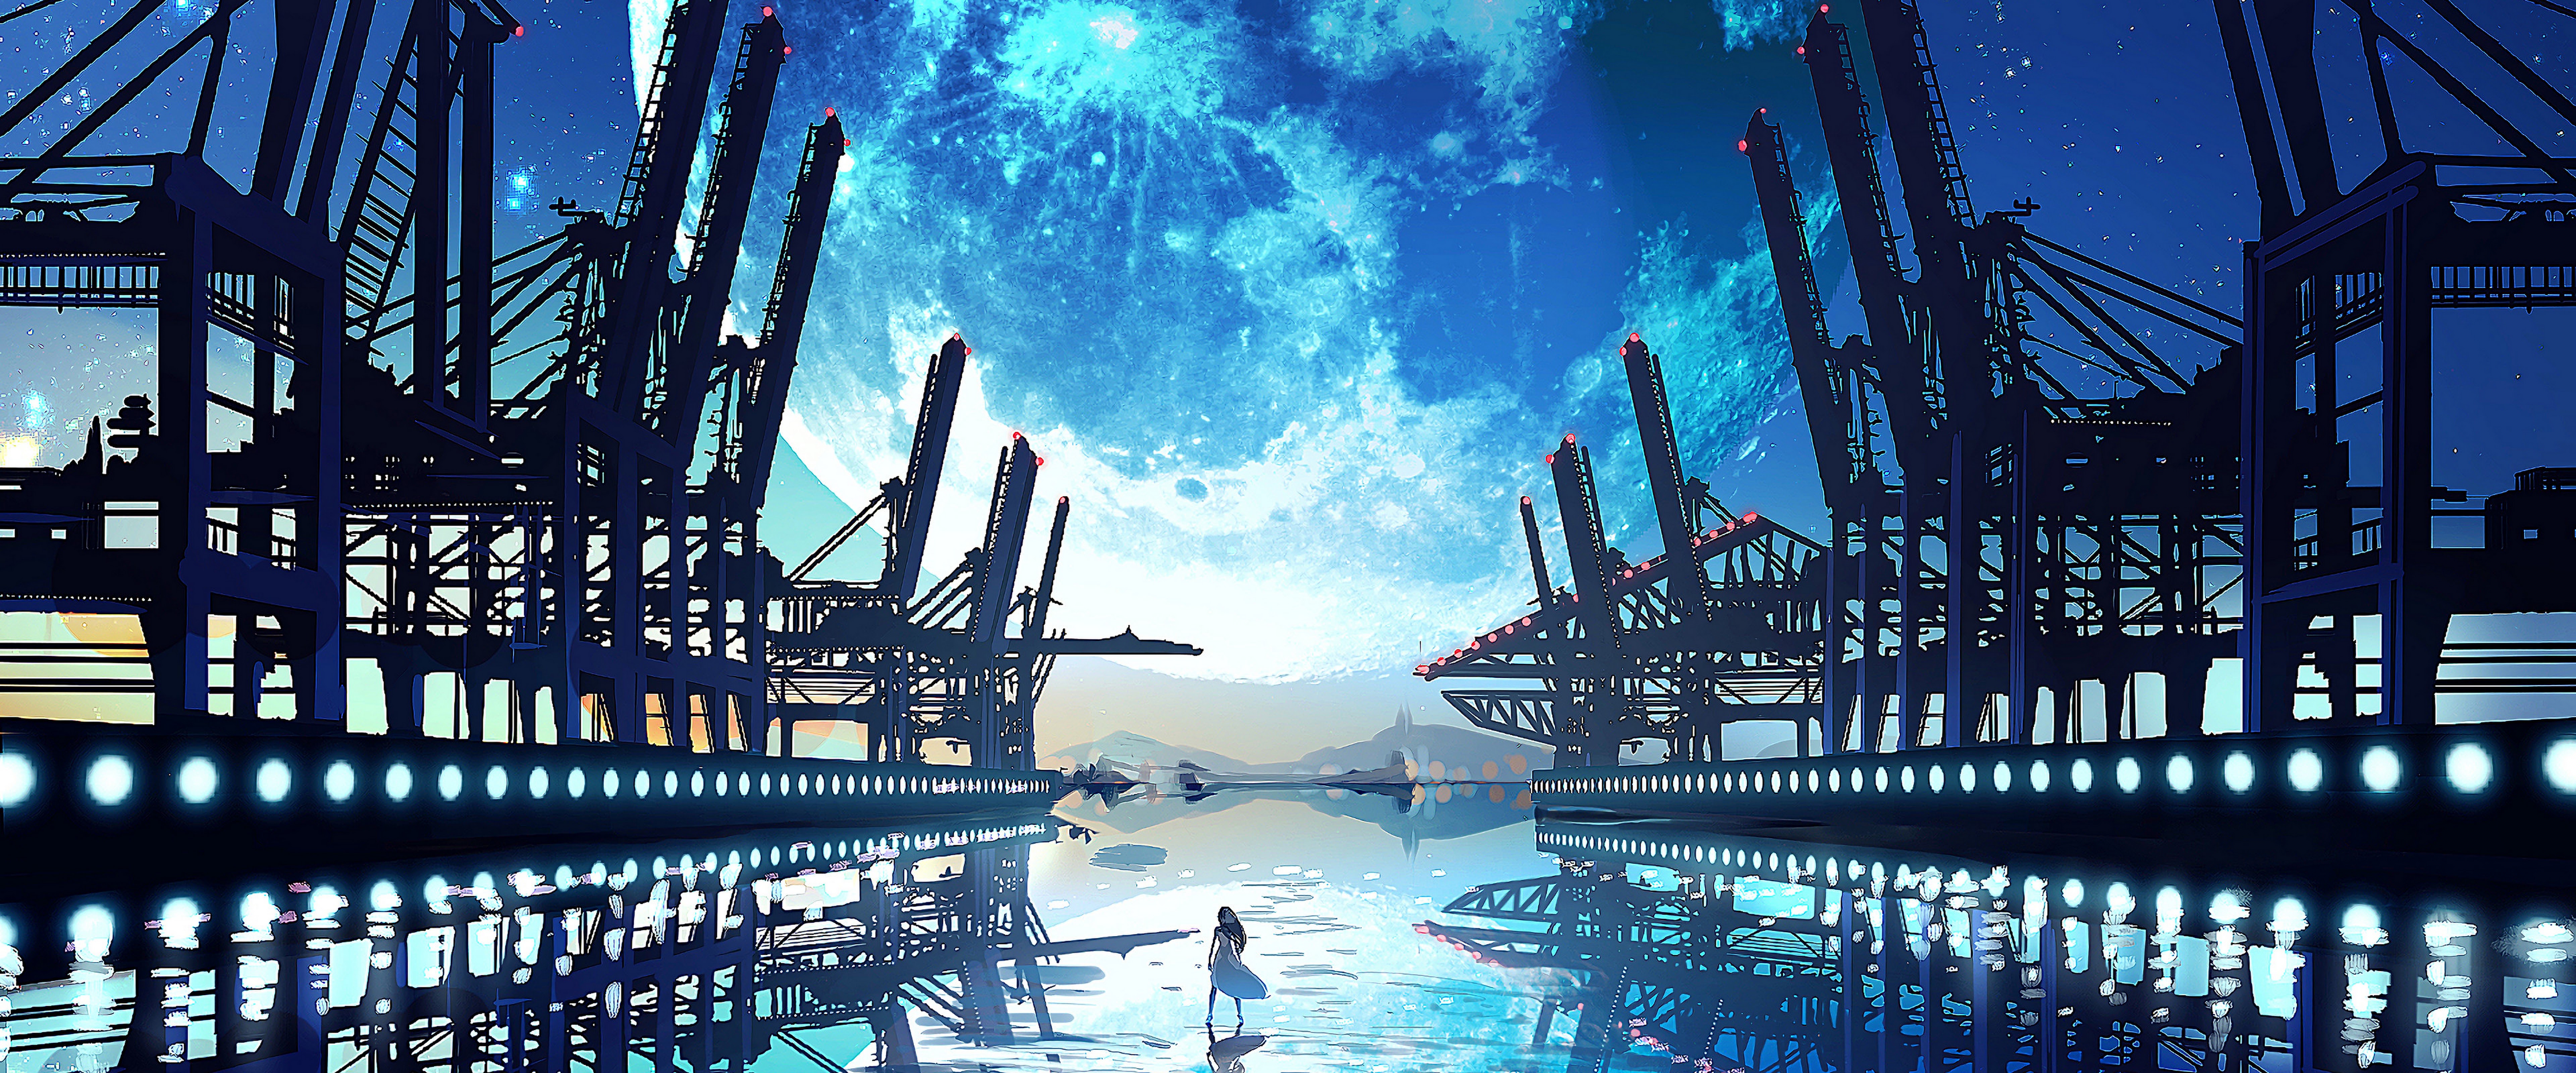 Anime Scenery Landscape Moon 4K Wallpaper